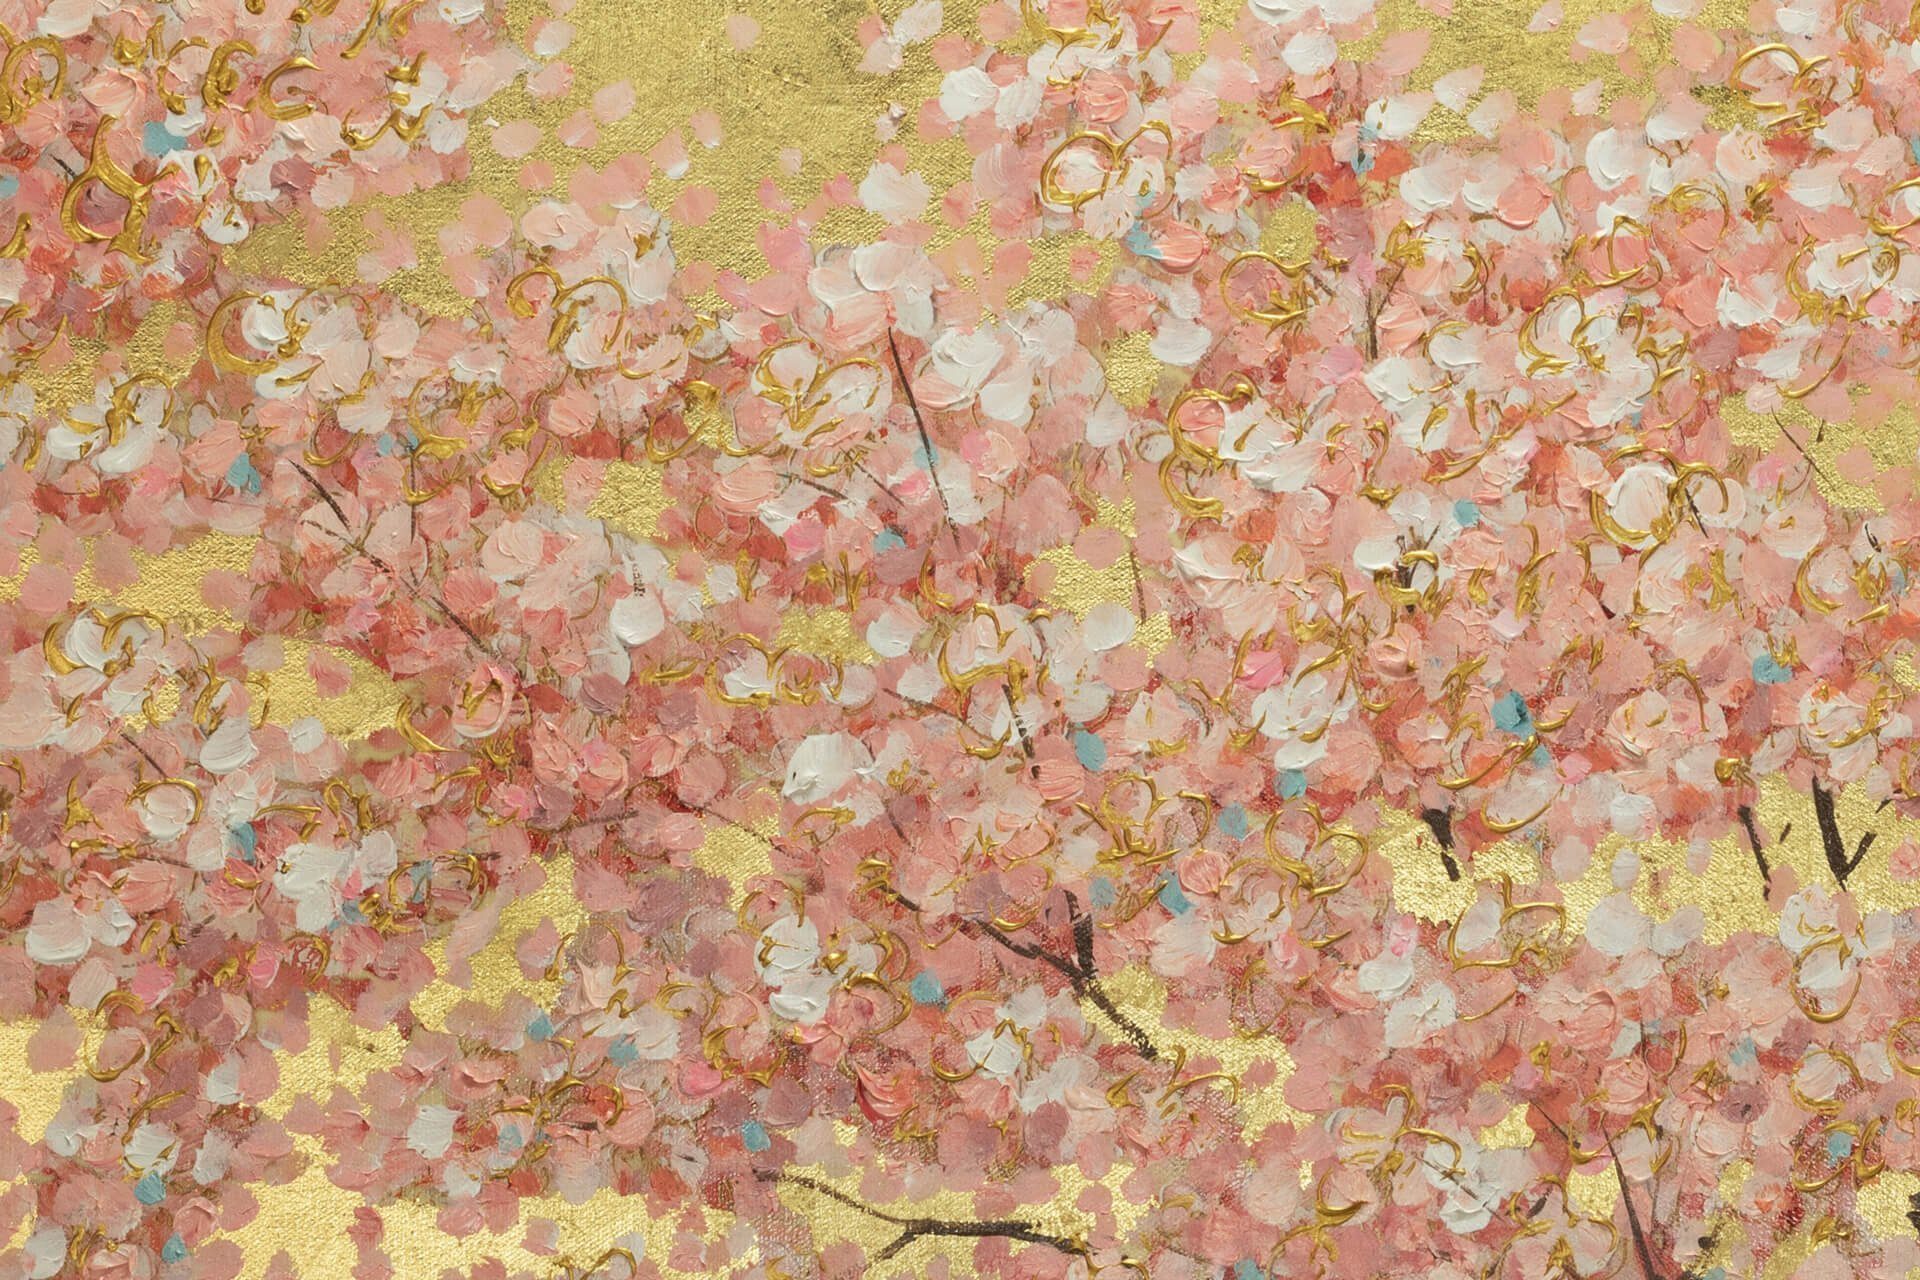 Leinwandbild HANDGEMALT Wandbild Gemälde Blumenduft KUNSTLOFT 120x60 cm, Wohnzimmer Erster 100%